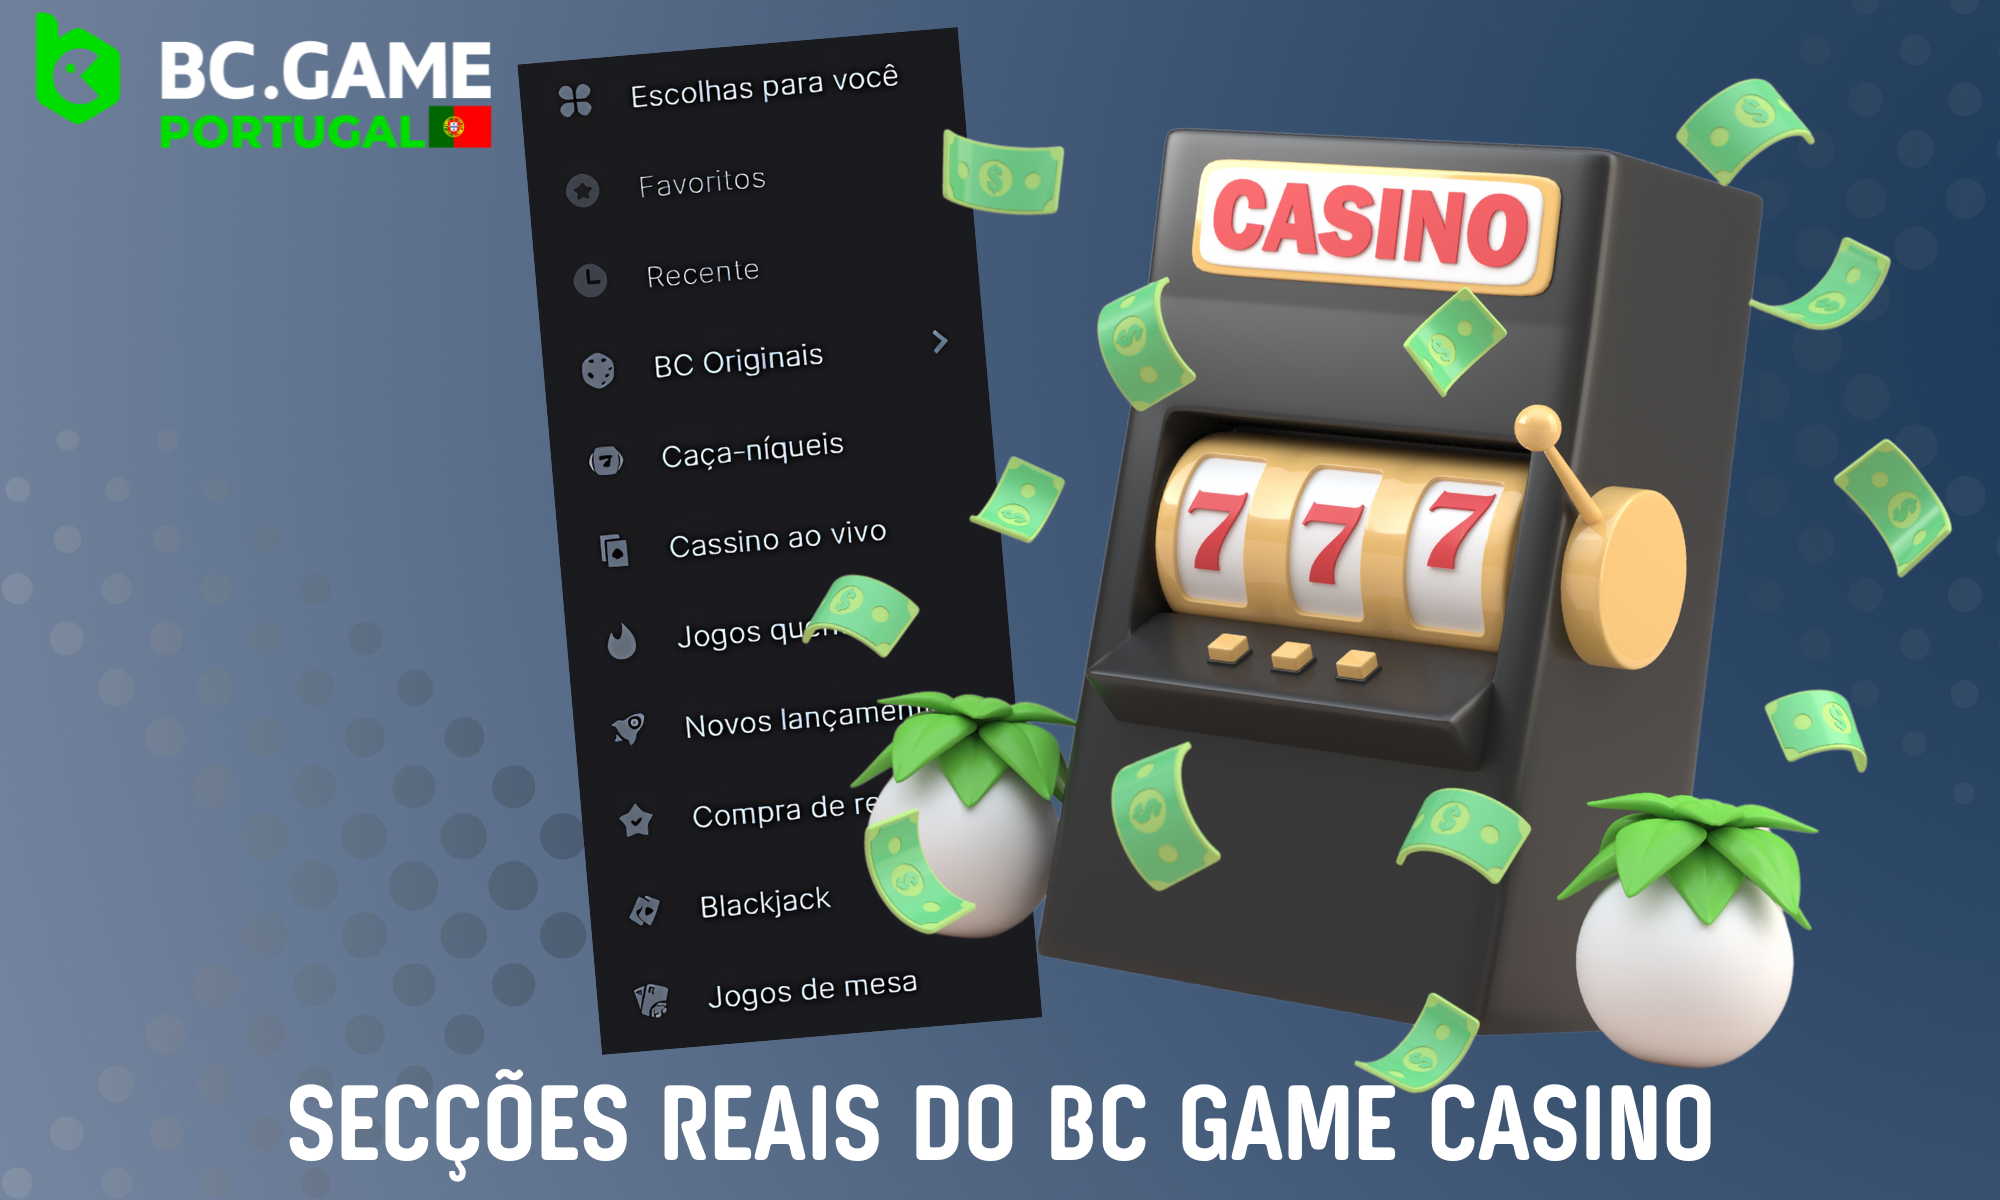 O BC Game Casino tem diferentes secções nas quais é apresentado um grande número de jogos diferentes